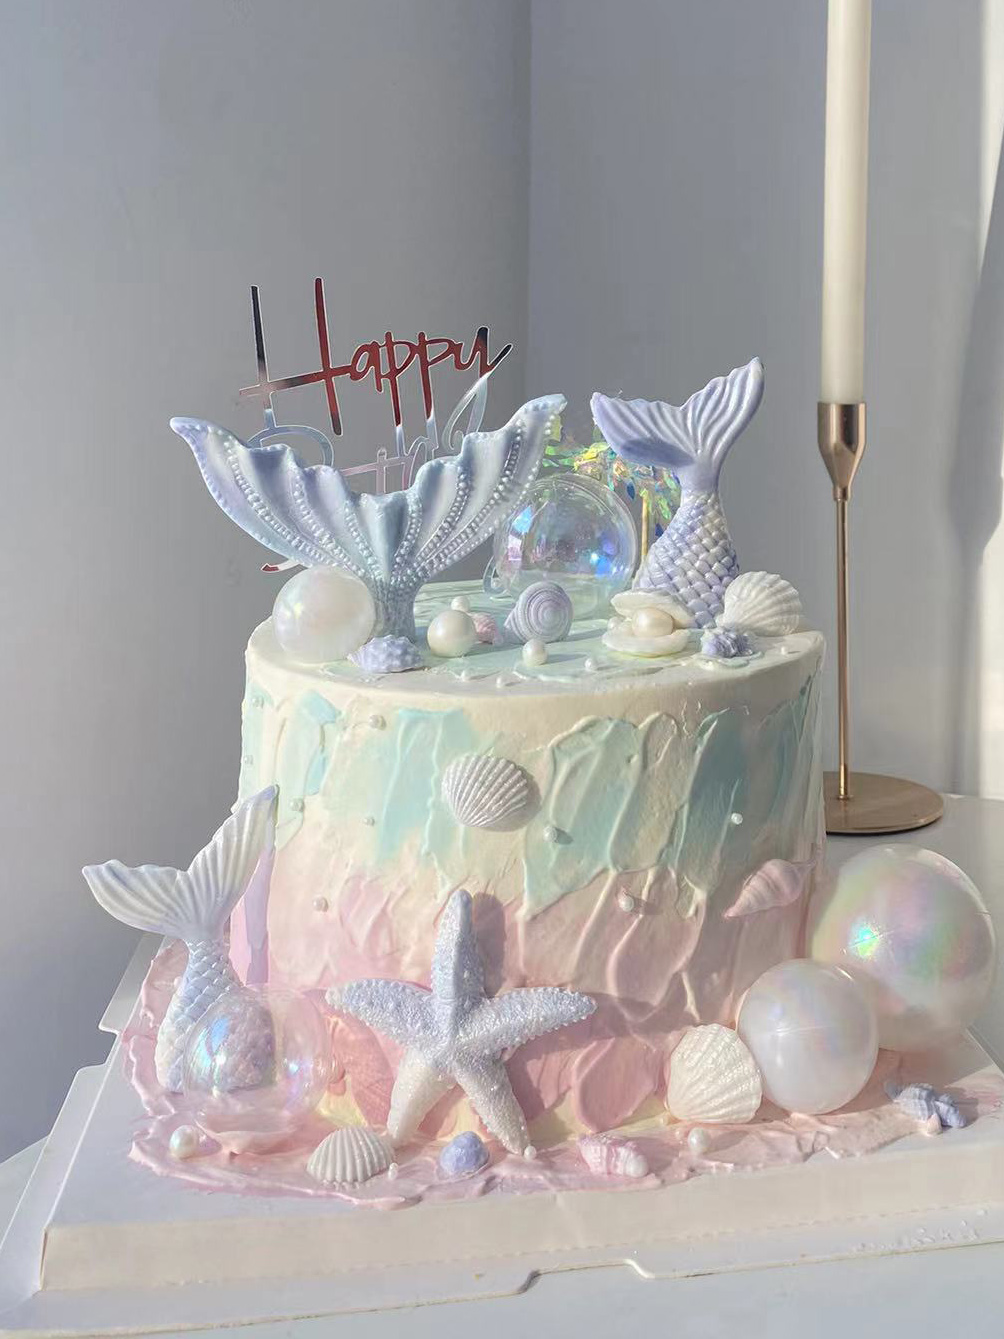 生日蛋糕装饰双鱼座宝宝摆件女神款珍珠蝴蝶结美人鱼尾模具小仙女